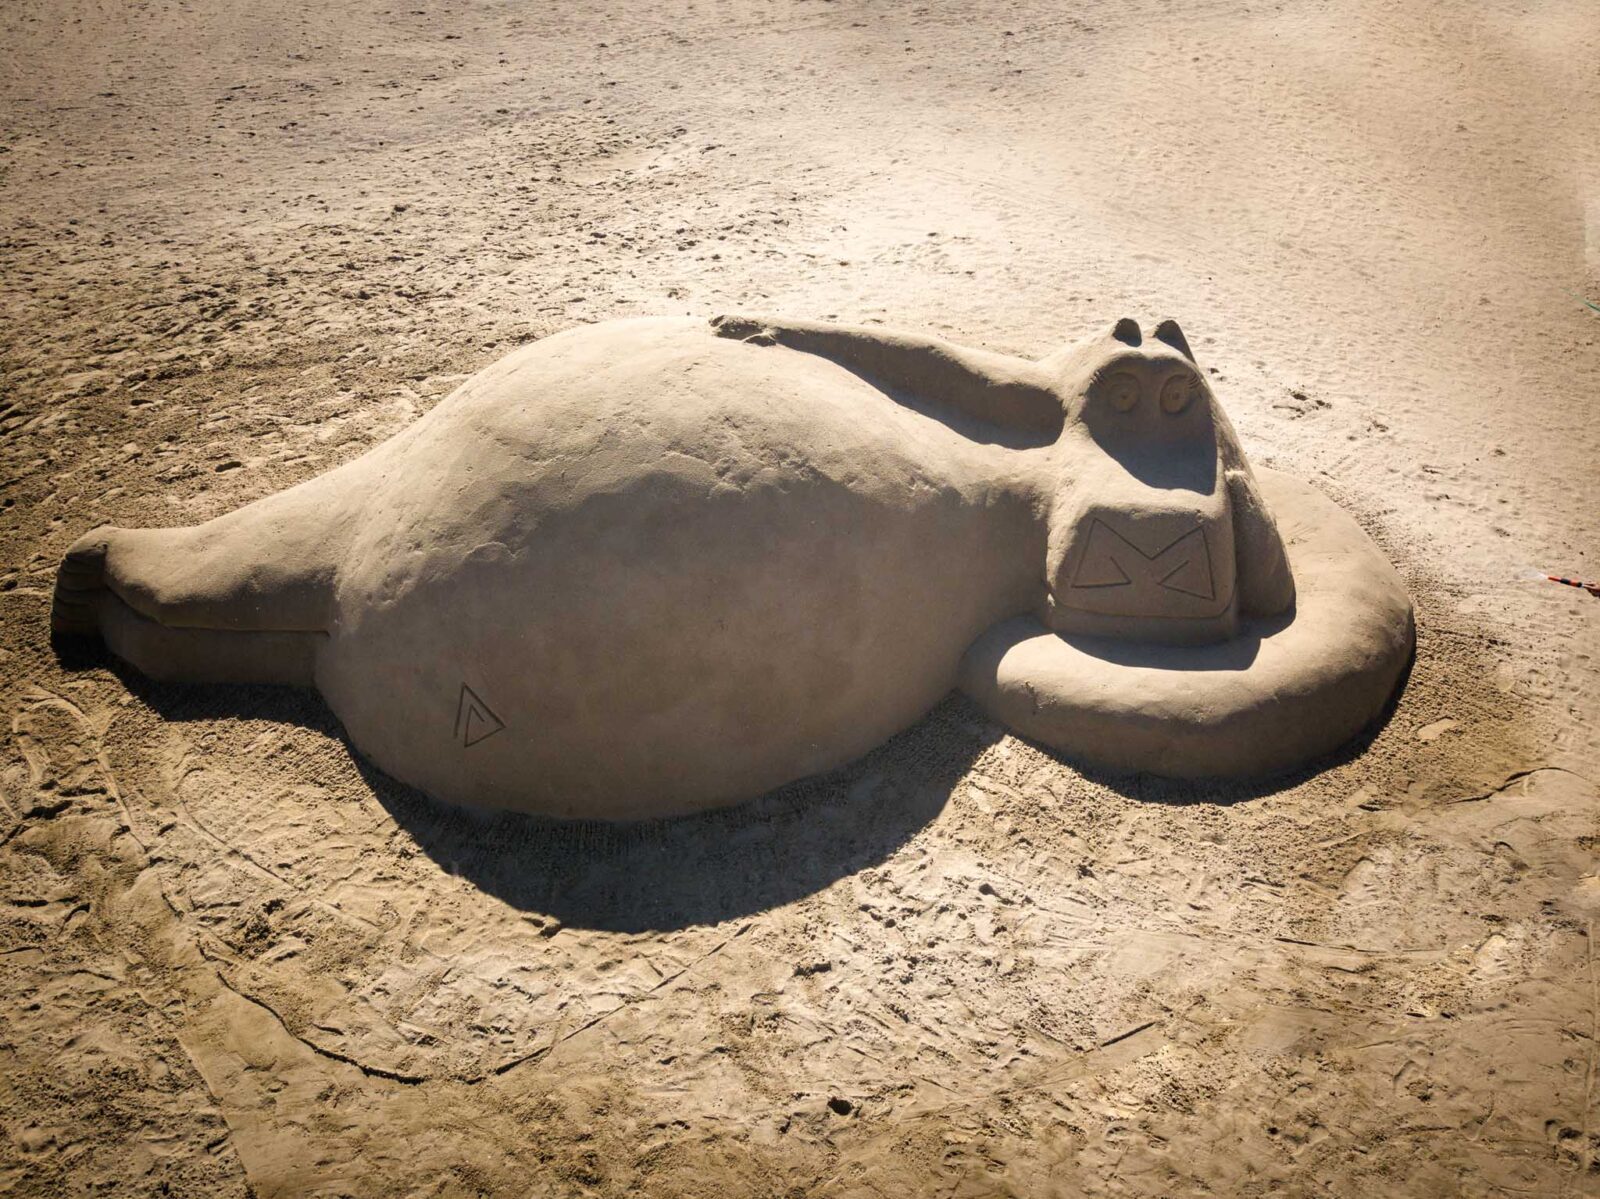 Skulpture u pijesku (1)